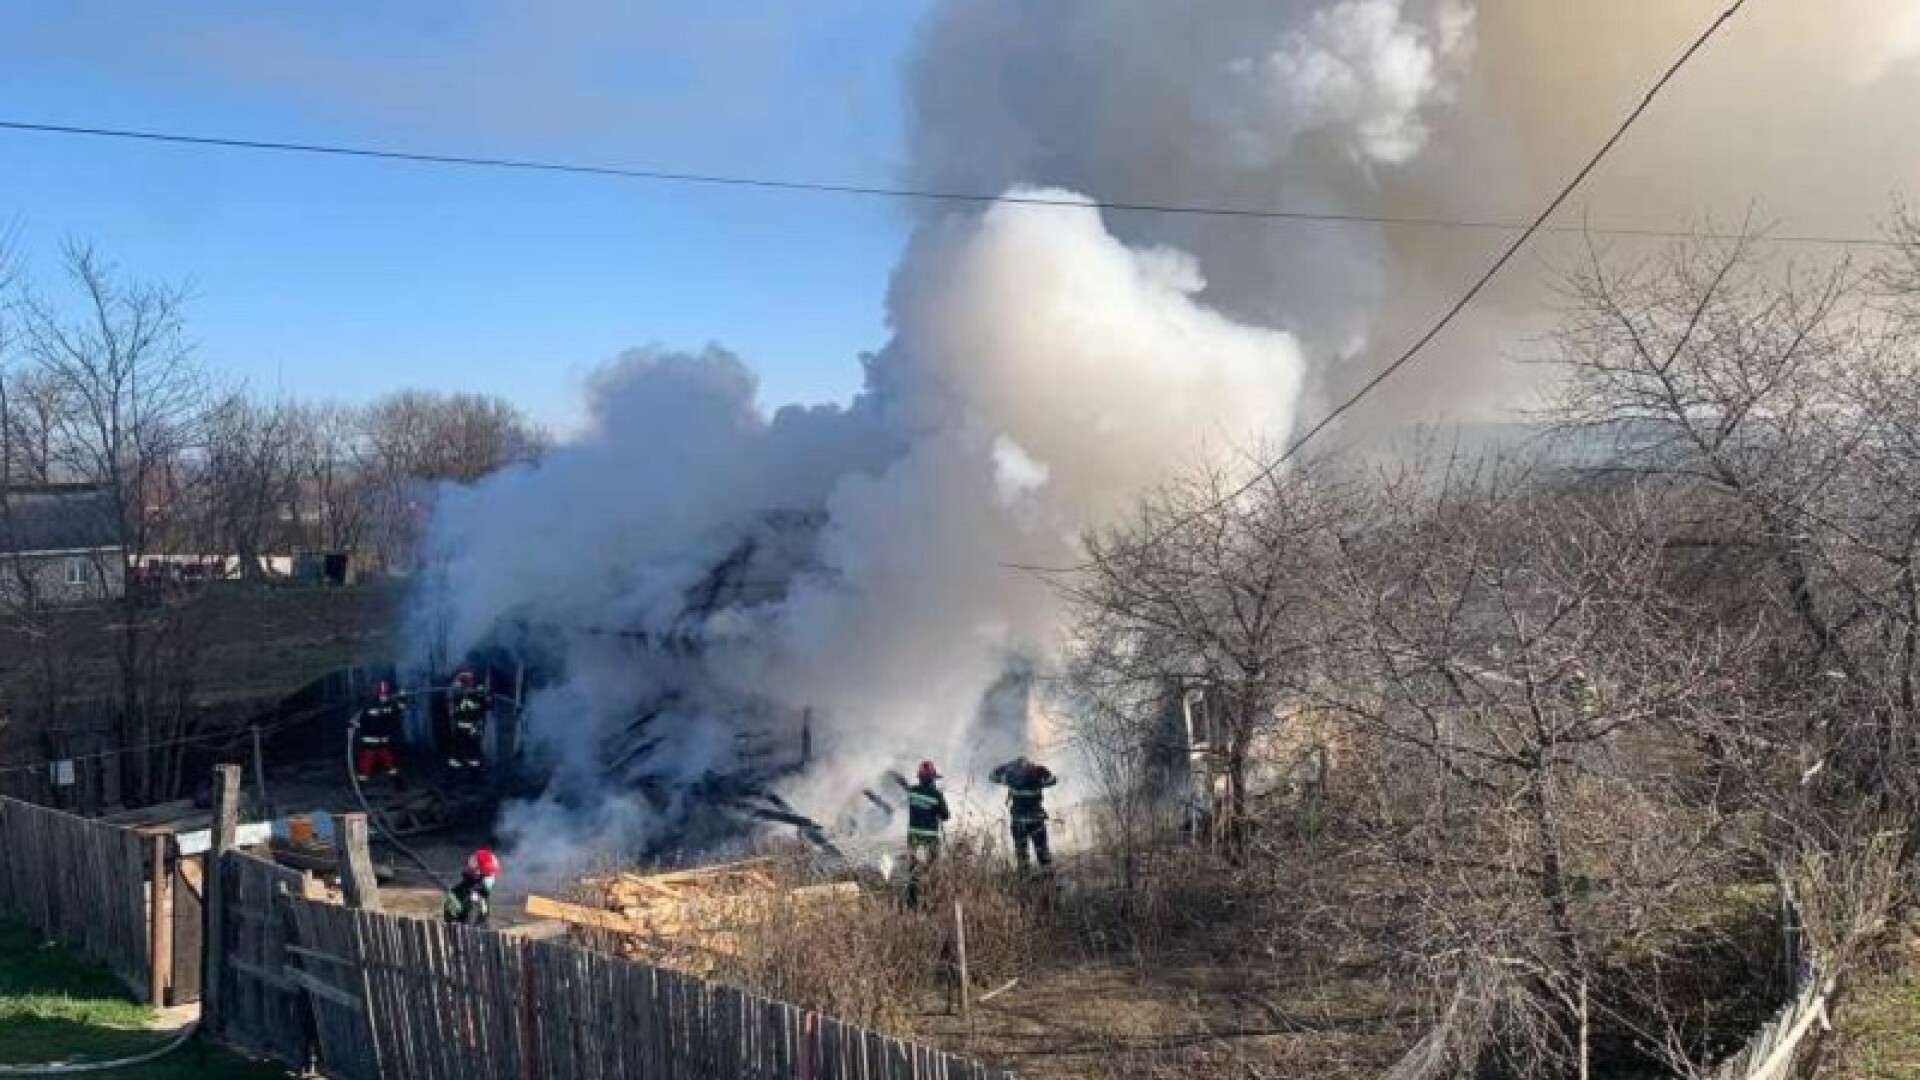 Tragedie în Neamț. O femeie de 59 de ani a murit într-un incendiu care i-a mistuit casa